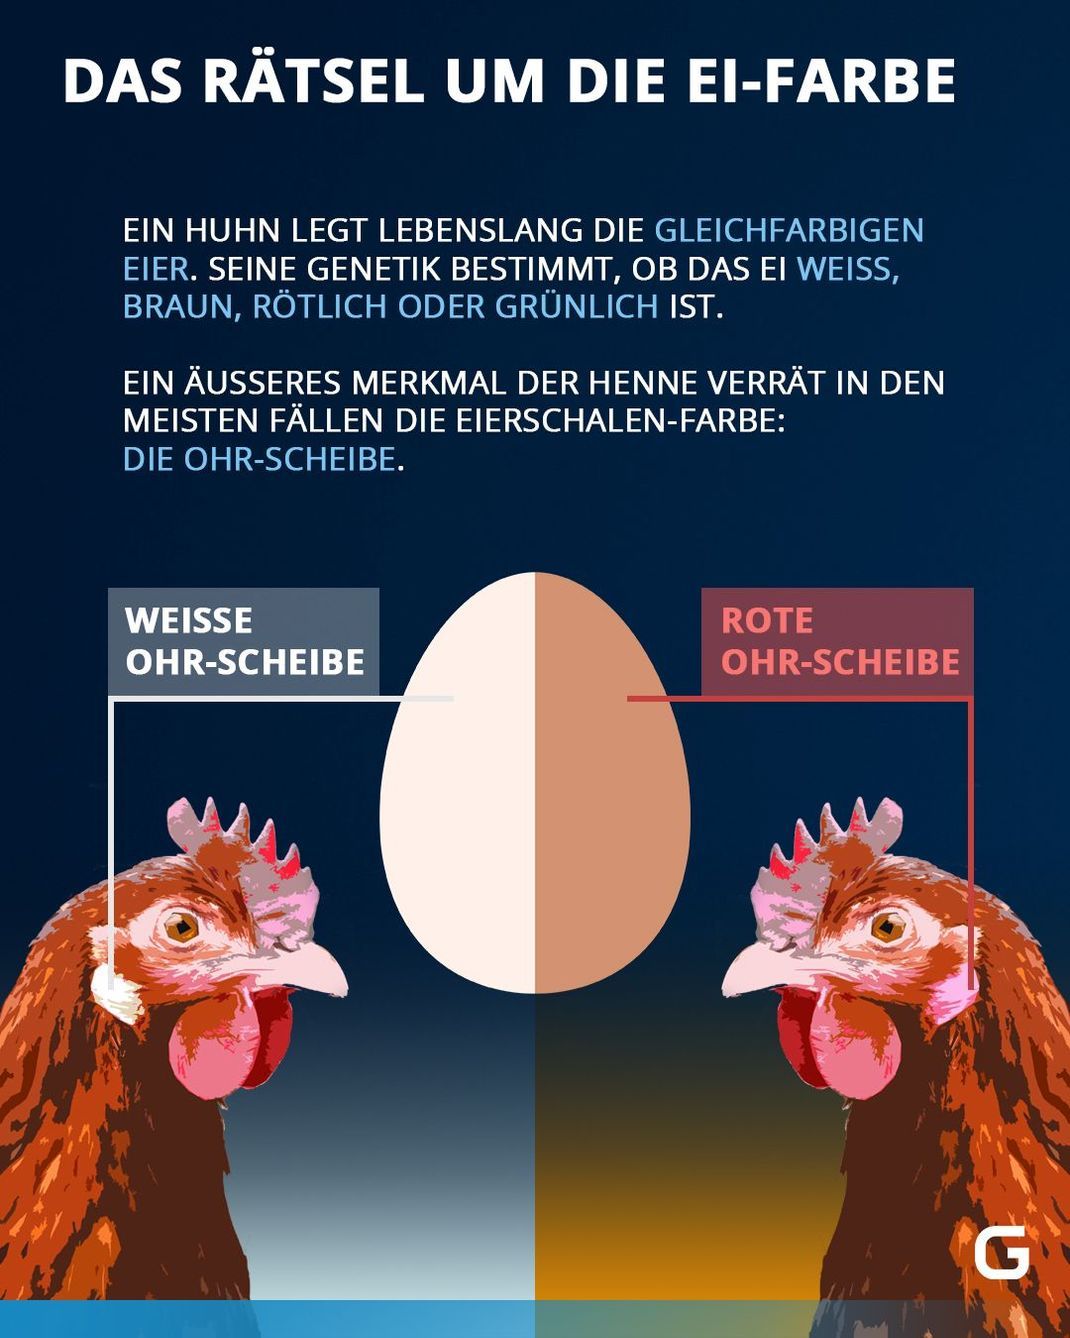 Was bestimmt die Farbe von Eiern? Wusstest du, dass meist die Ohr-Scheibe von Hühnern Aufschluss darüber gibt, welche Farbe das Ei hat?